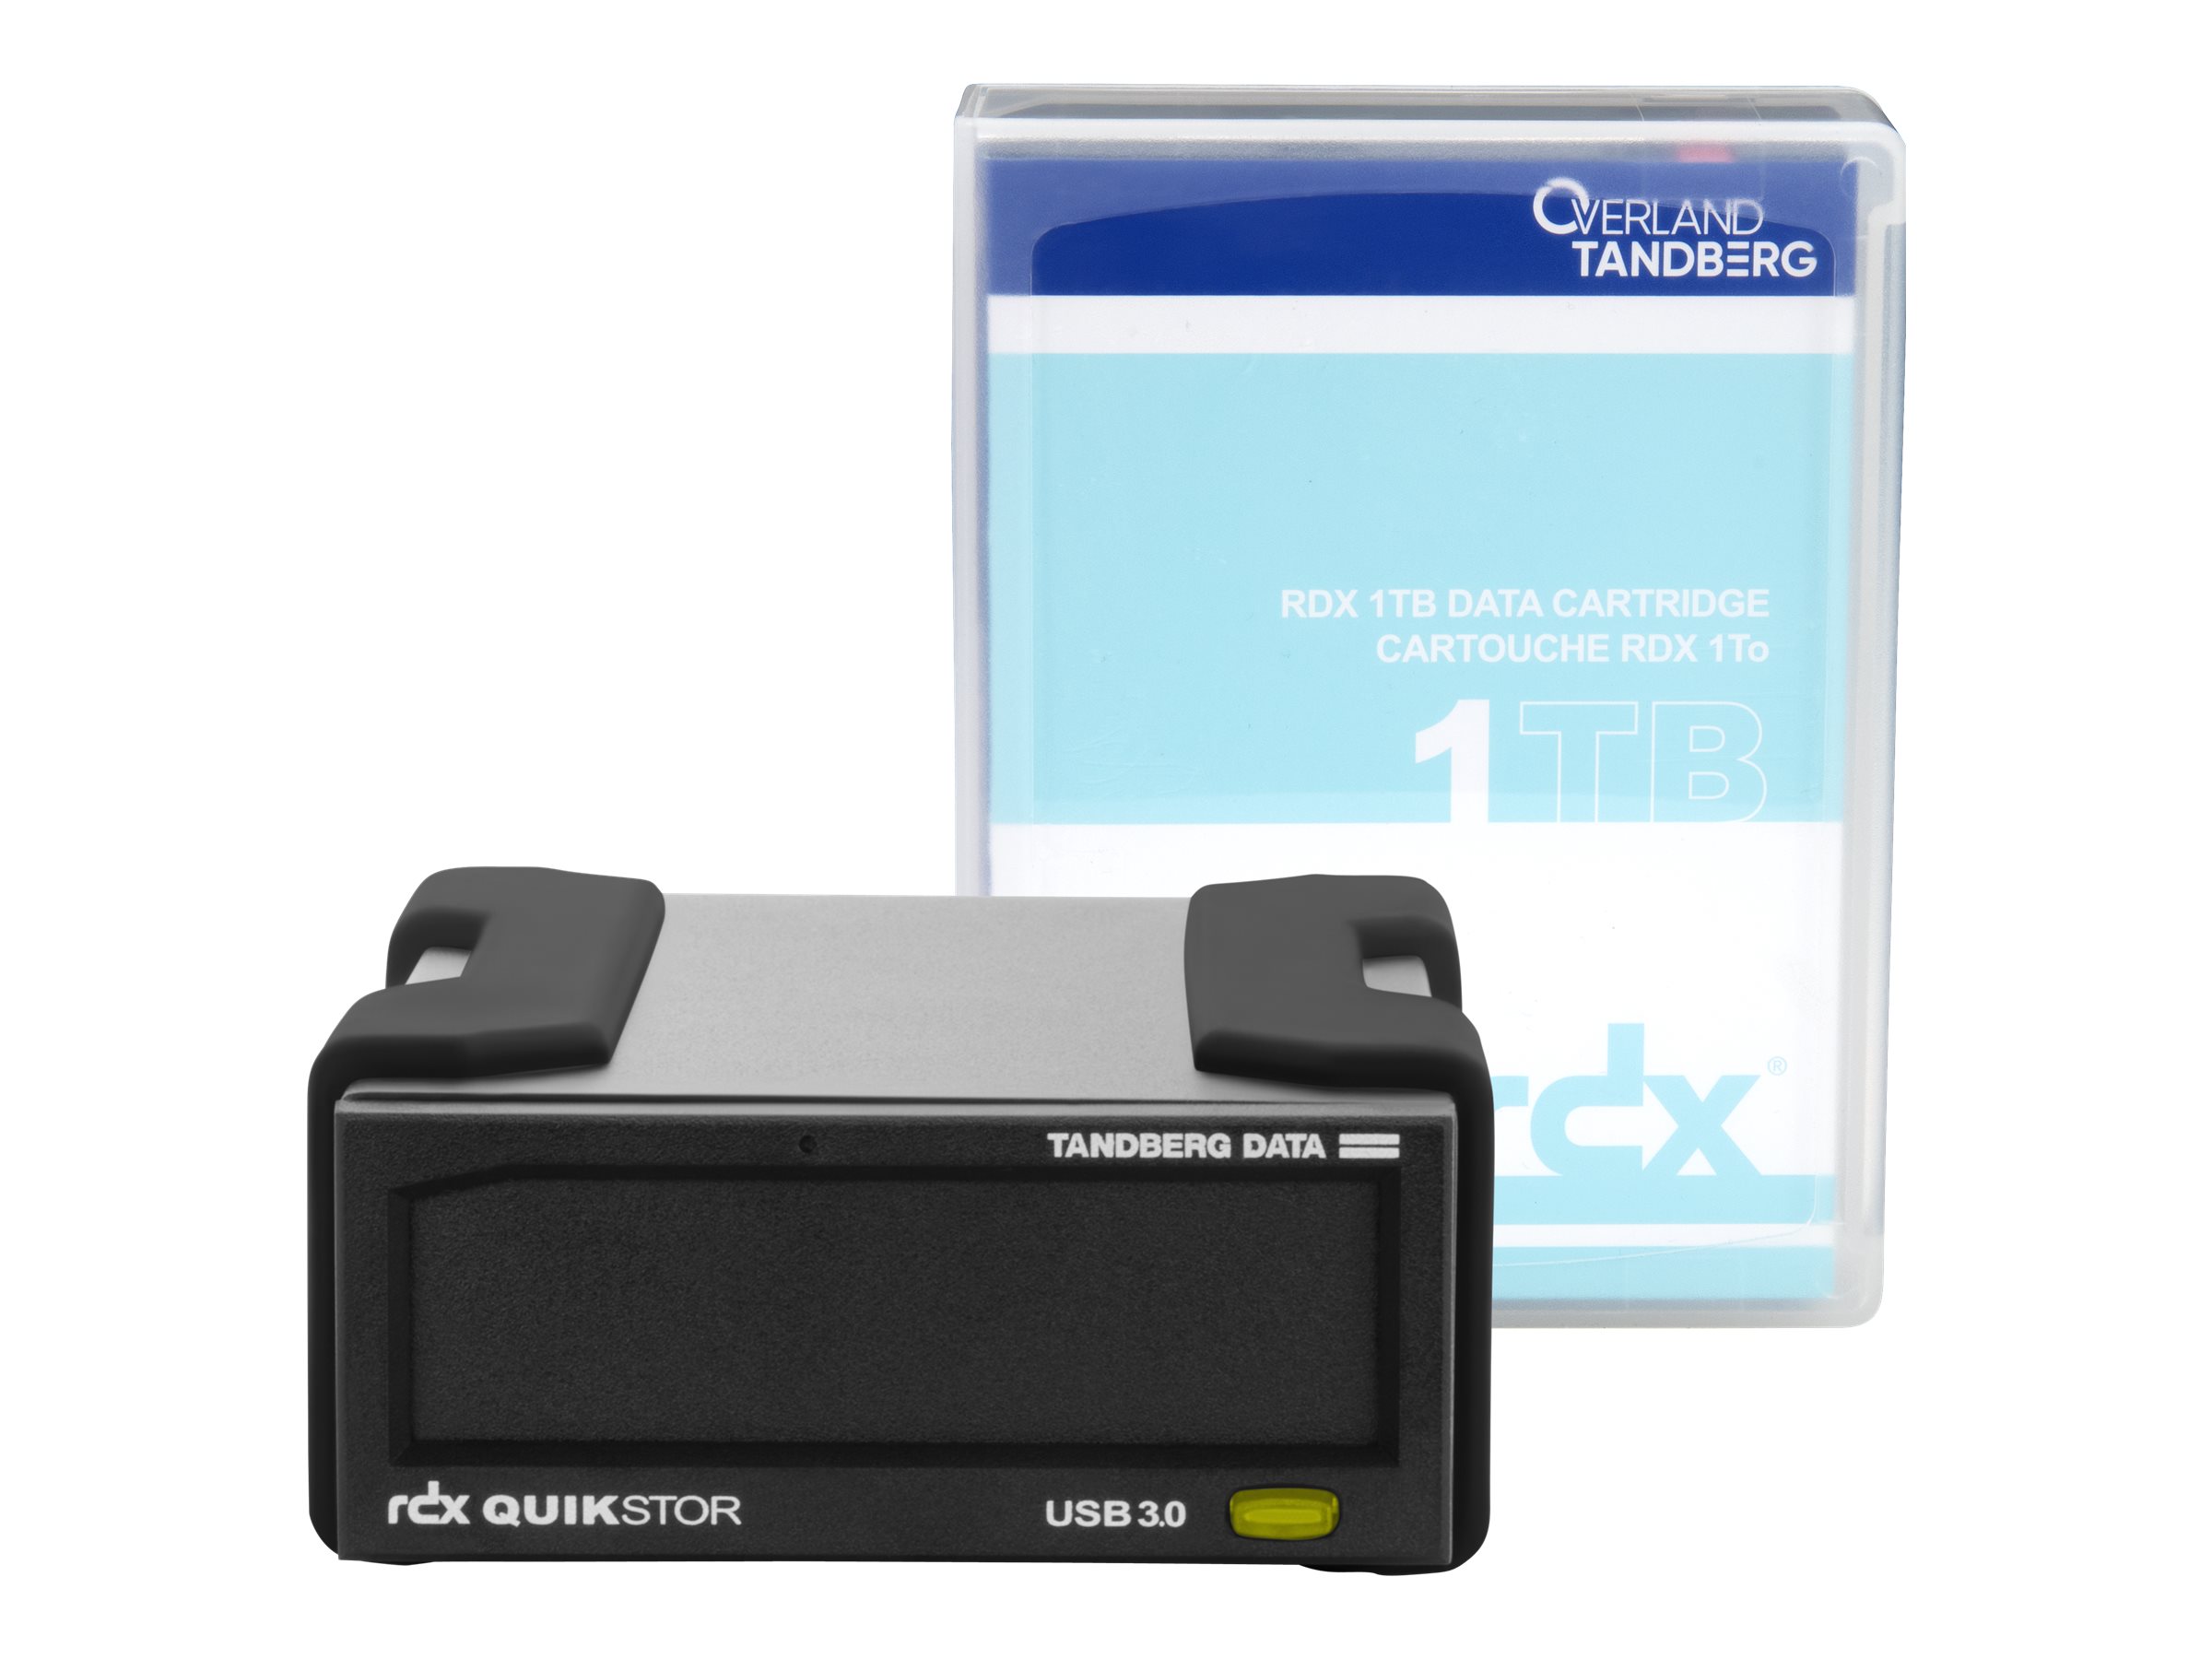 Overland Tandberg RDX QuikStor - Laufwerk - RDX Kartusche - SuperSpeed USB 3.0 - extern - mit Kartusche mit 1 TB